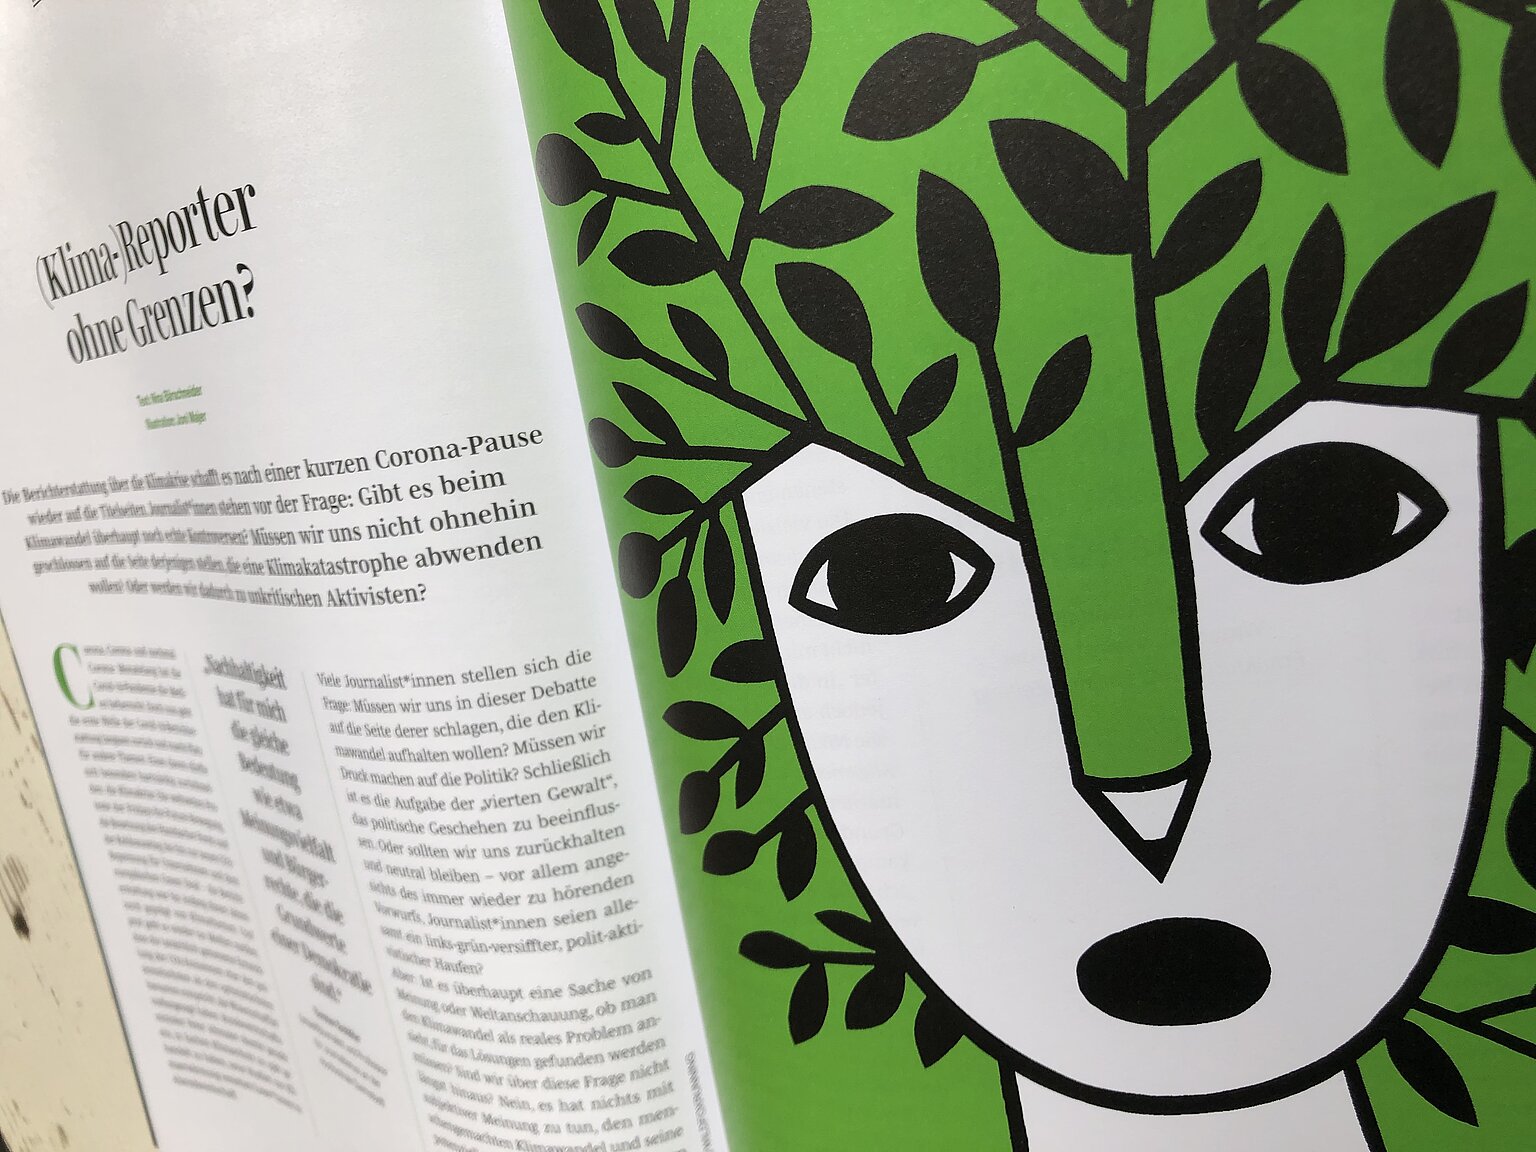  – Dürfen Journalist*innen Umweltschützer sein? Nina Bärschneider diskutiert die "Aktivisten"-Frage in der "grünen Ausgabe" des journalists.